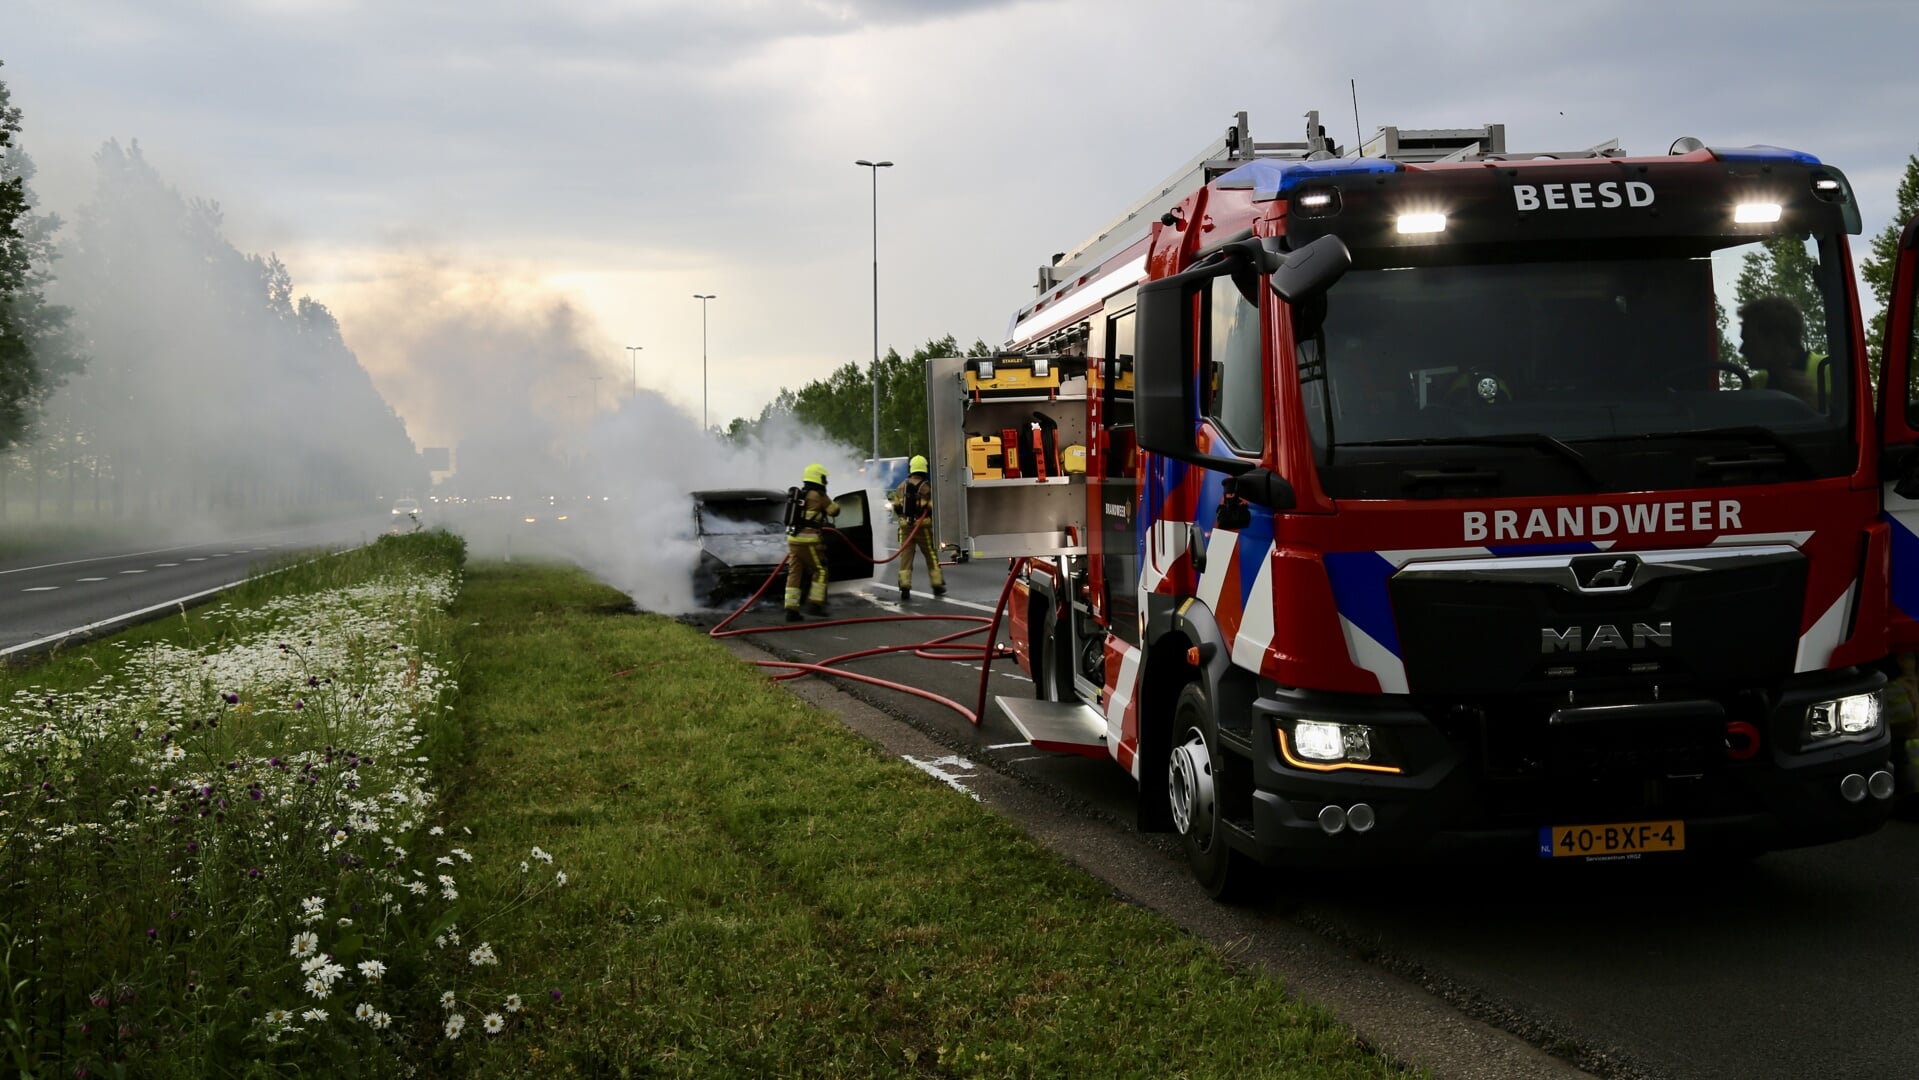 • De brandweer Beesd kwam in actie om de autobrand te blussen.